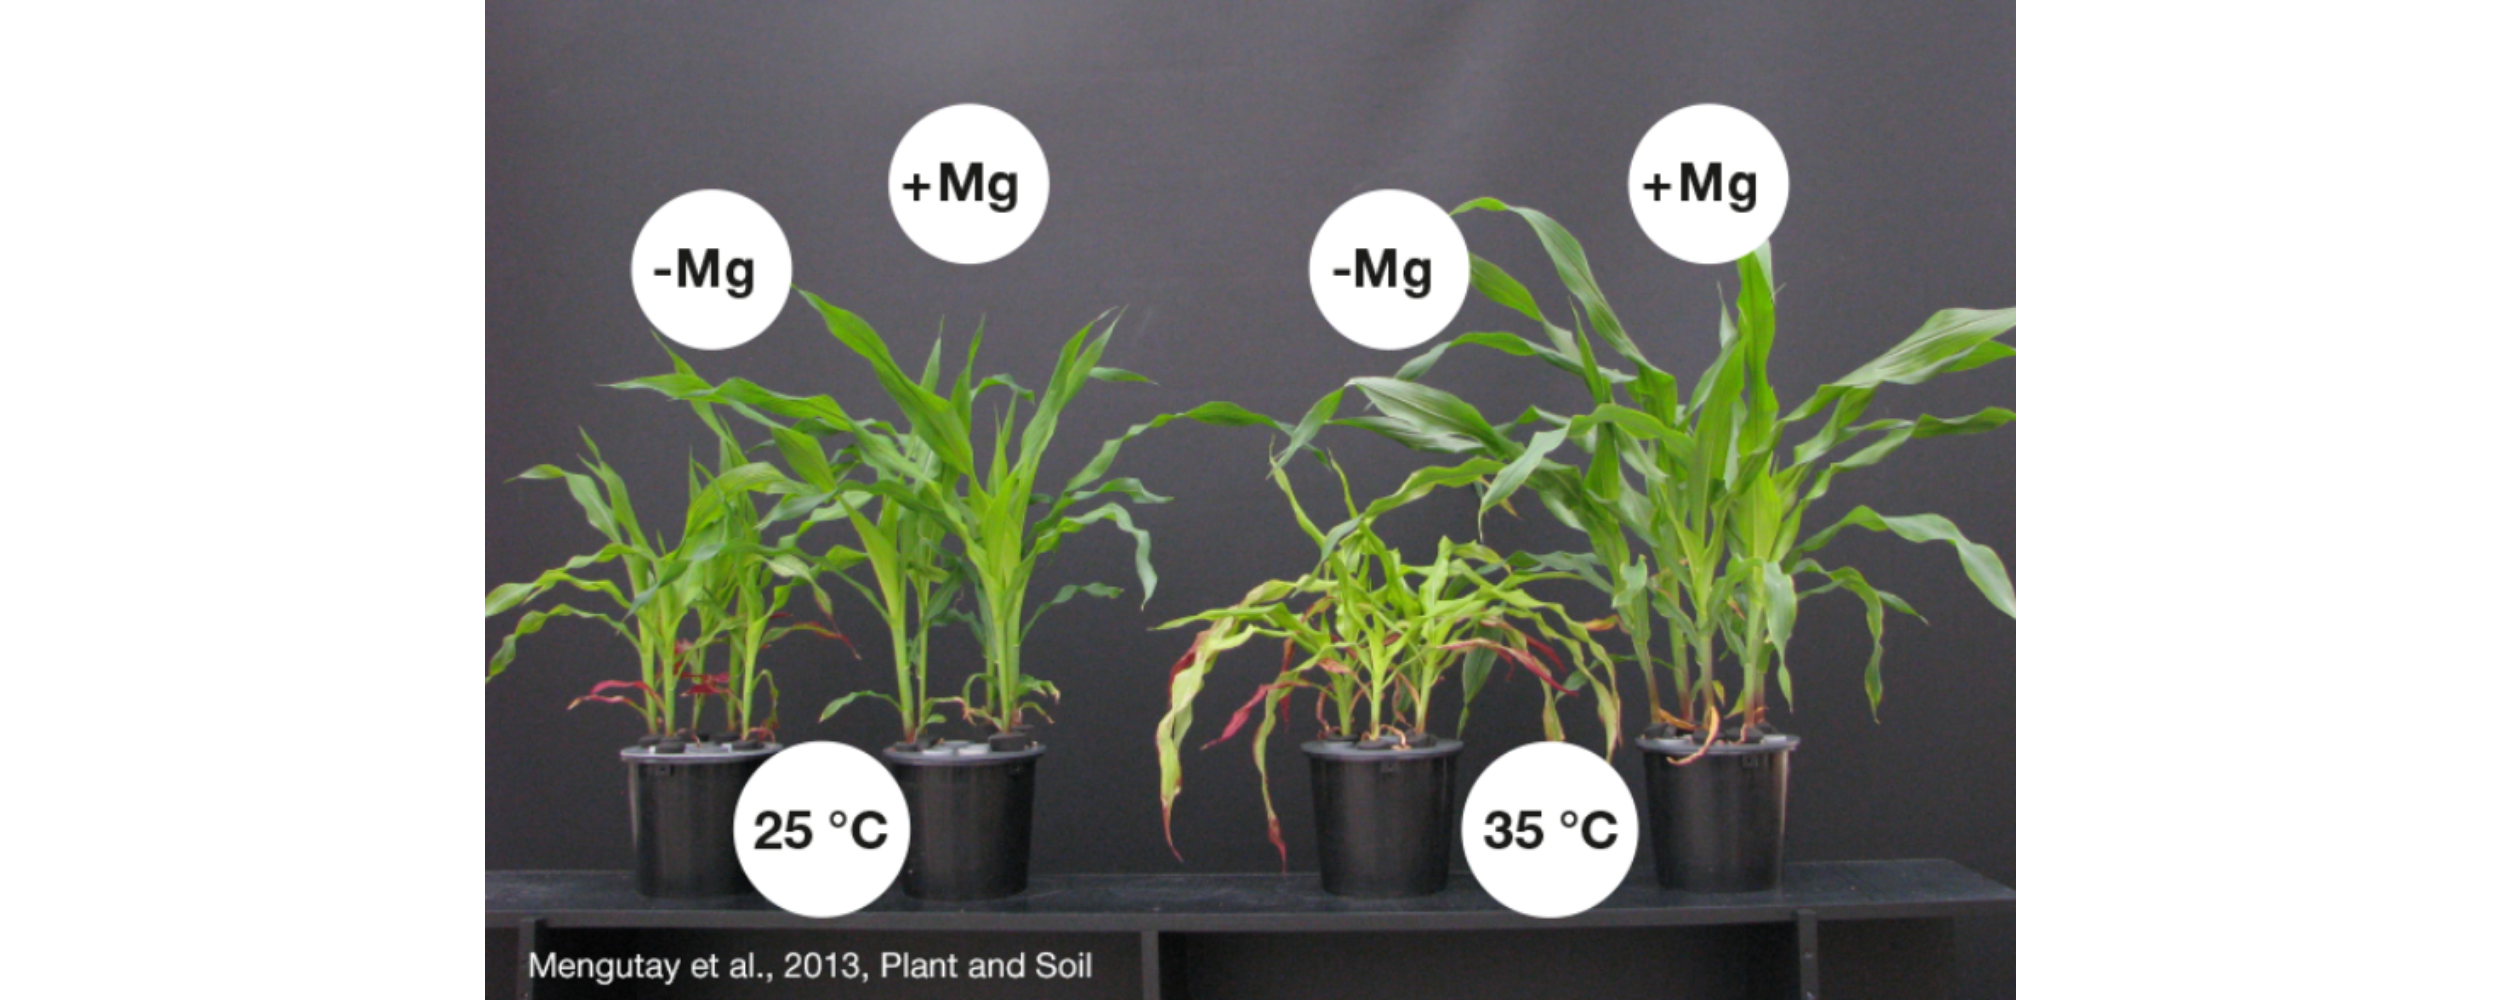 Las plantas de maíz con deficiencia de magnesio (-Mg) quedan atrofiadas en comparación con aquellas que cuentan con un buen aporte de magnesio (+Mg). A altas temperaturas de 35 °C se intensifica el efecto.